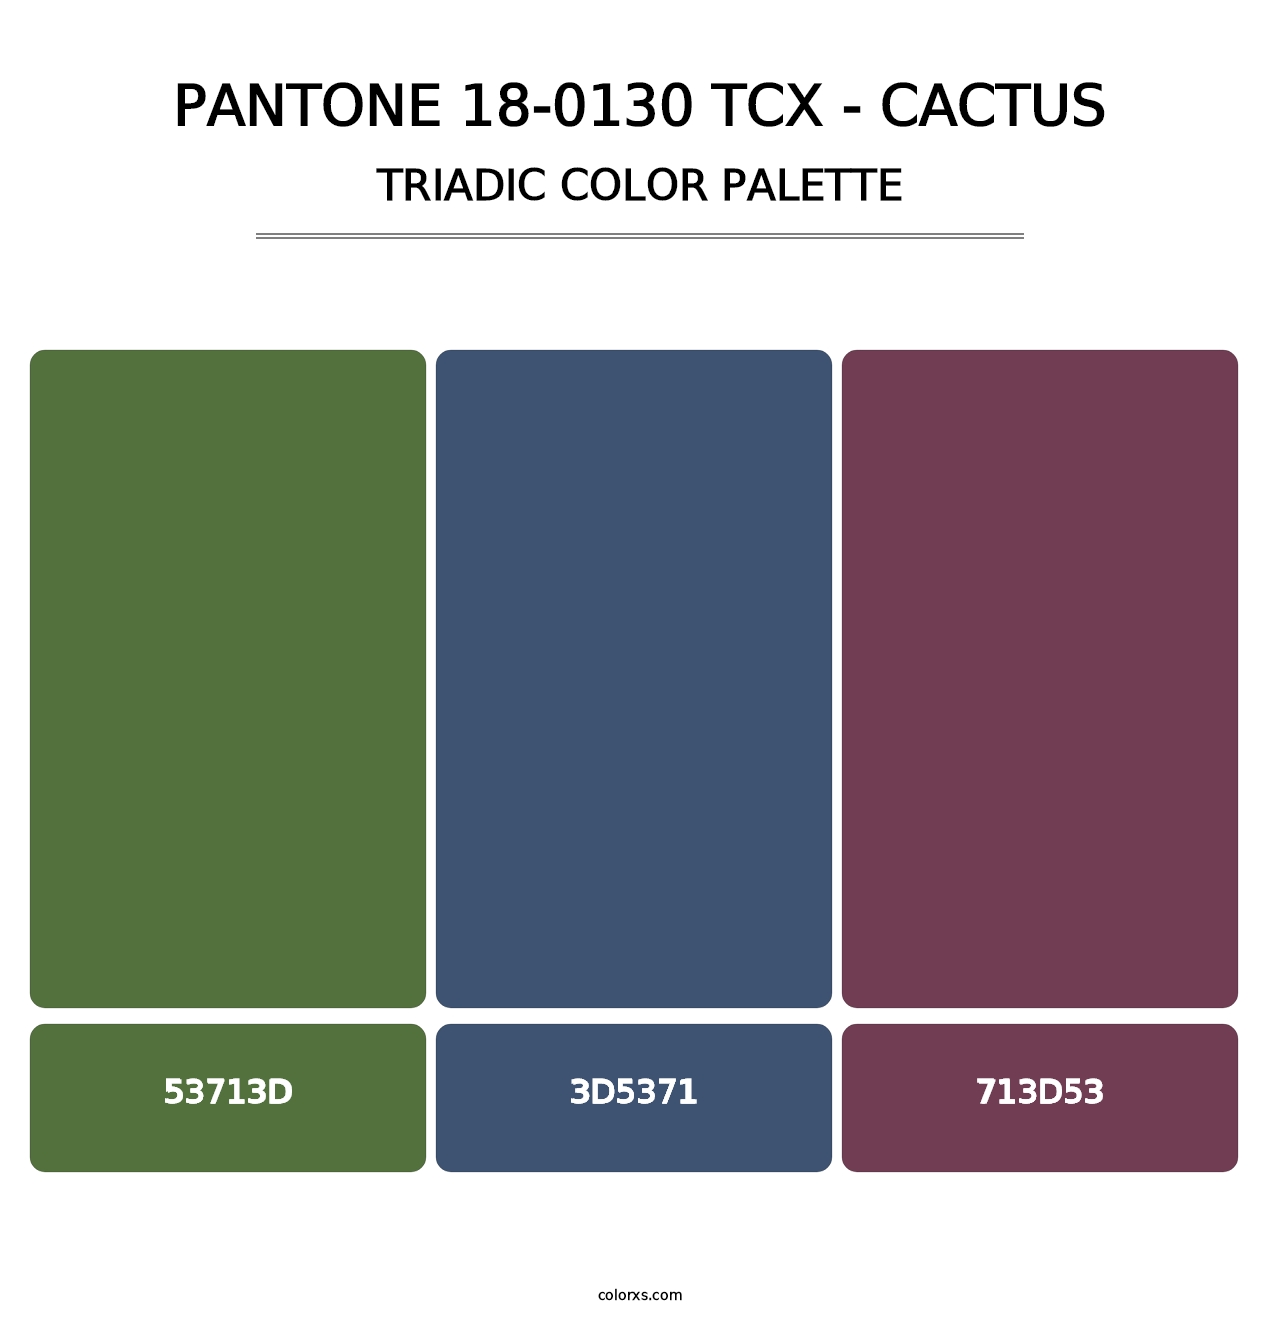 PANTONE 18-0130 TCX - Cactus - Triadic Color Palette